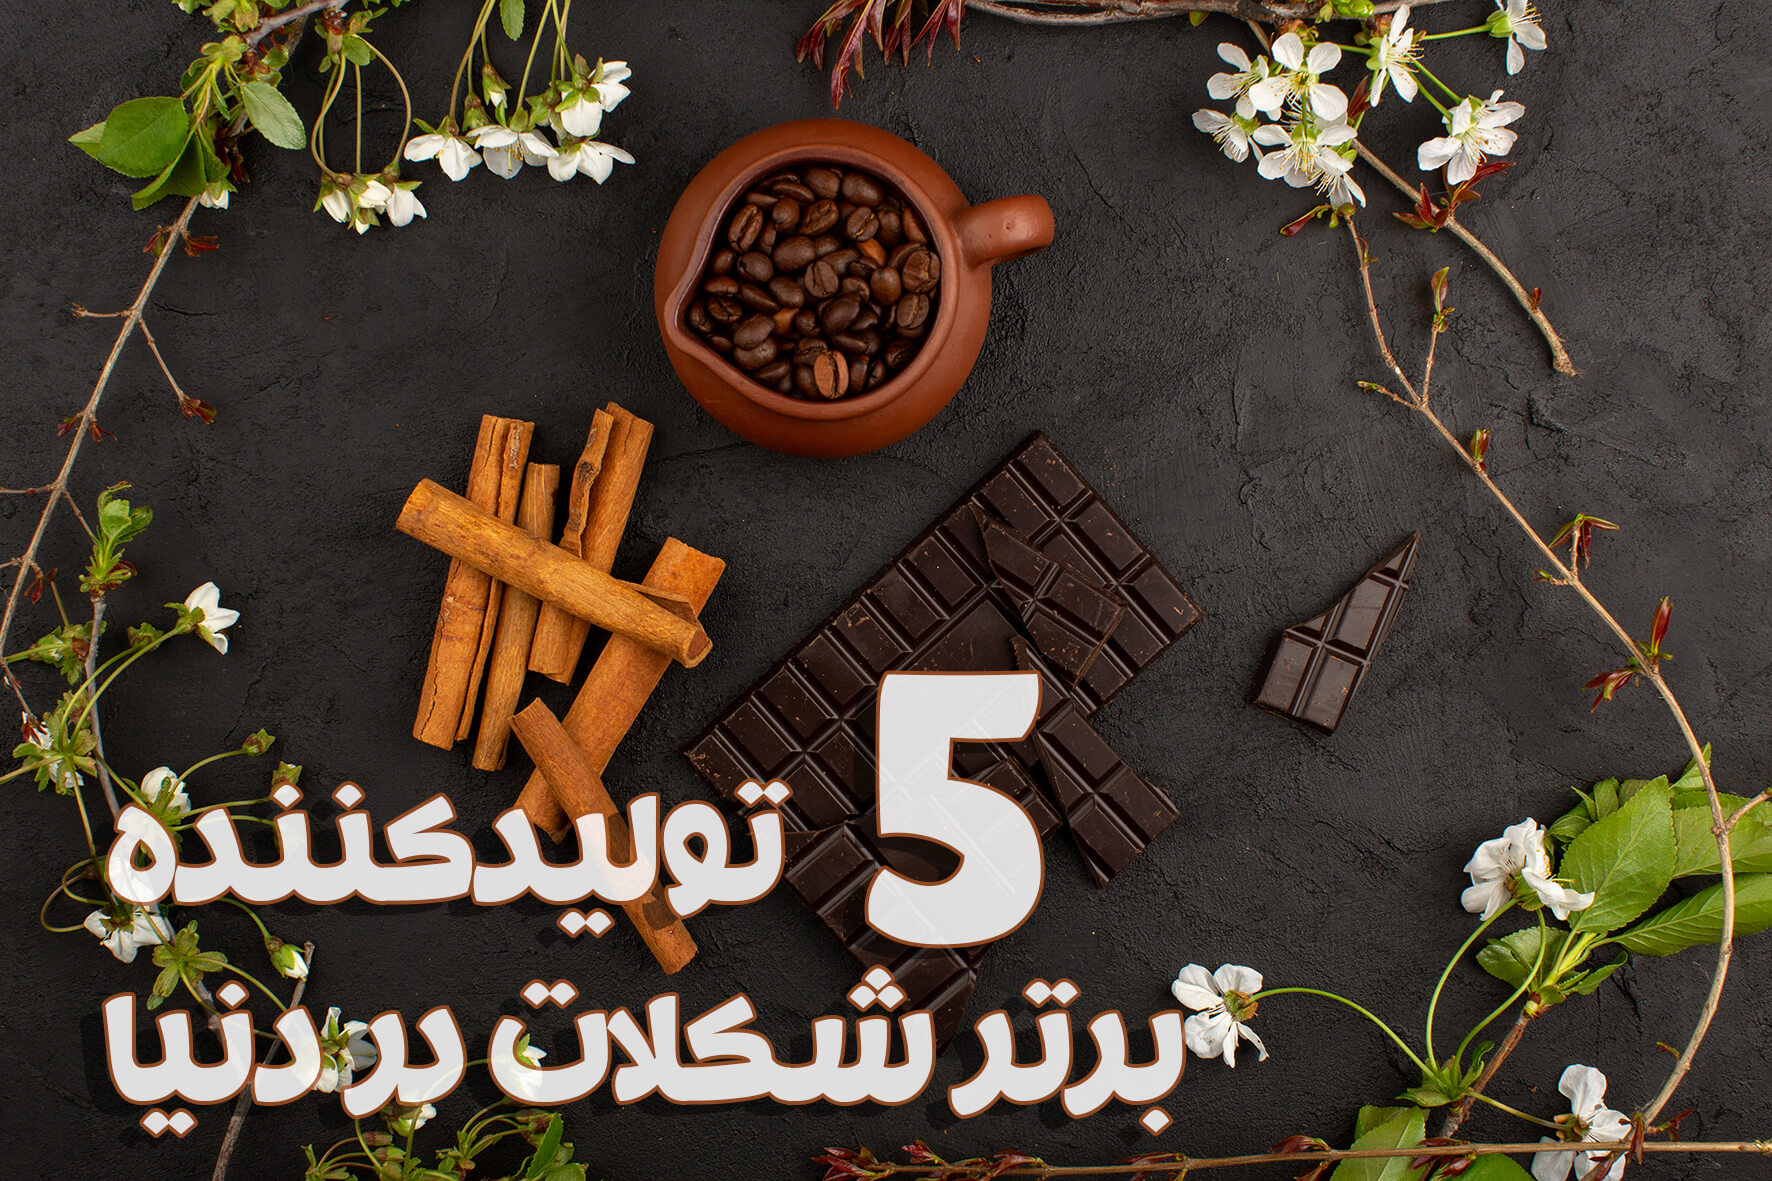 ۵ تولید کننده برتر شکلات در دنیا